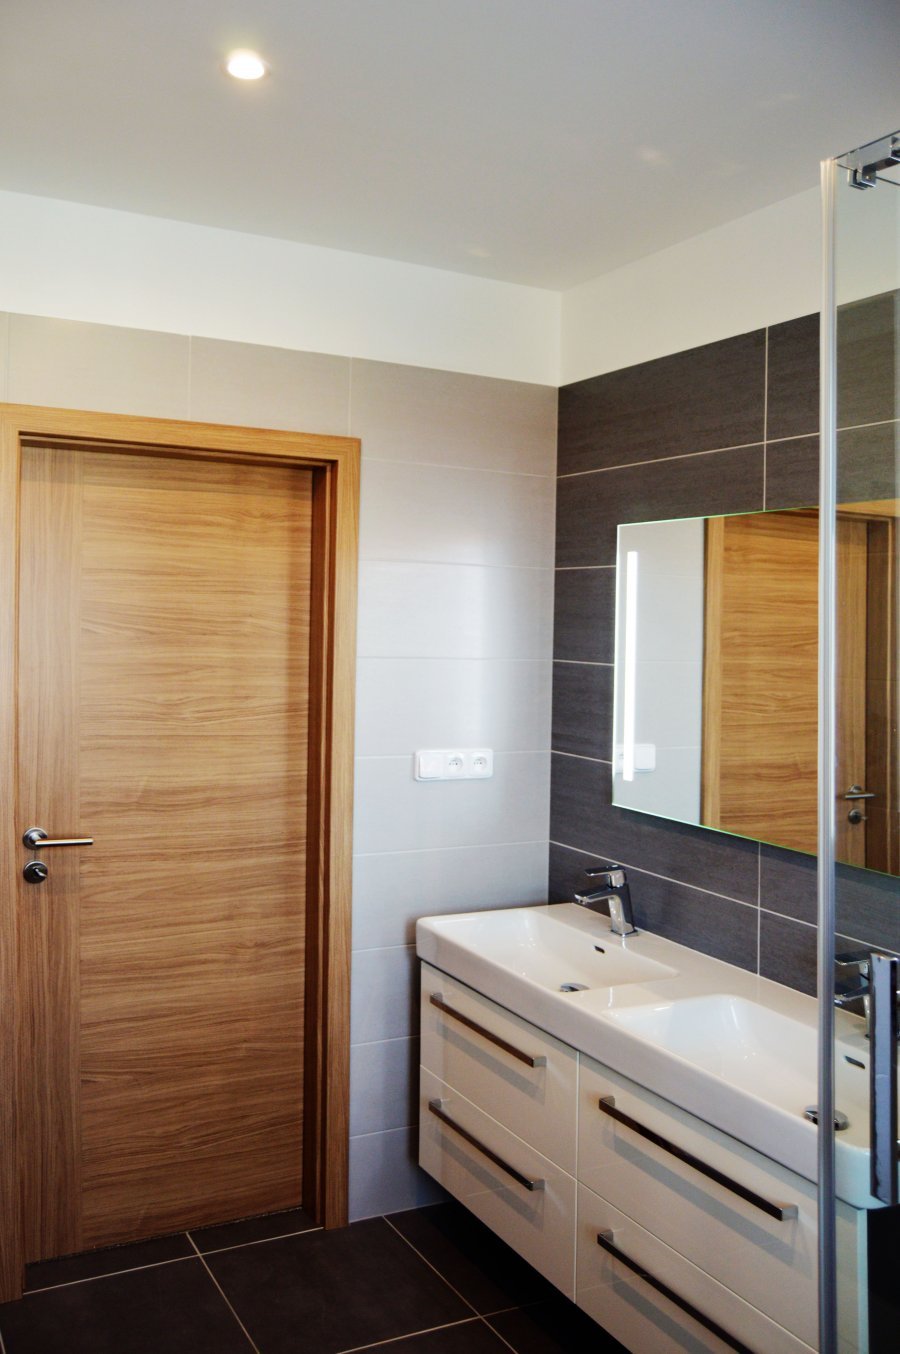 Rekonstrukce koupelny | Koupelnový nábytek je v barvě dle vzorníku RAL Antrazit č.7016 a čelní plochy jsou bílé ve vysokém lesku | Koupelny-svitavy.cz